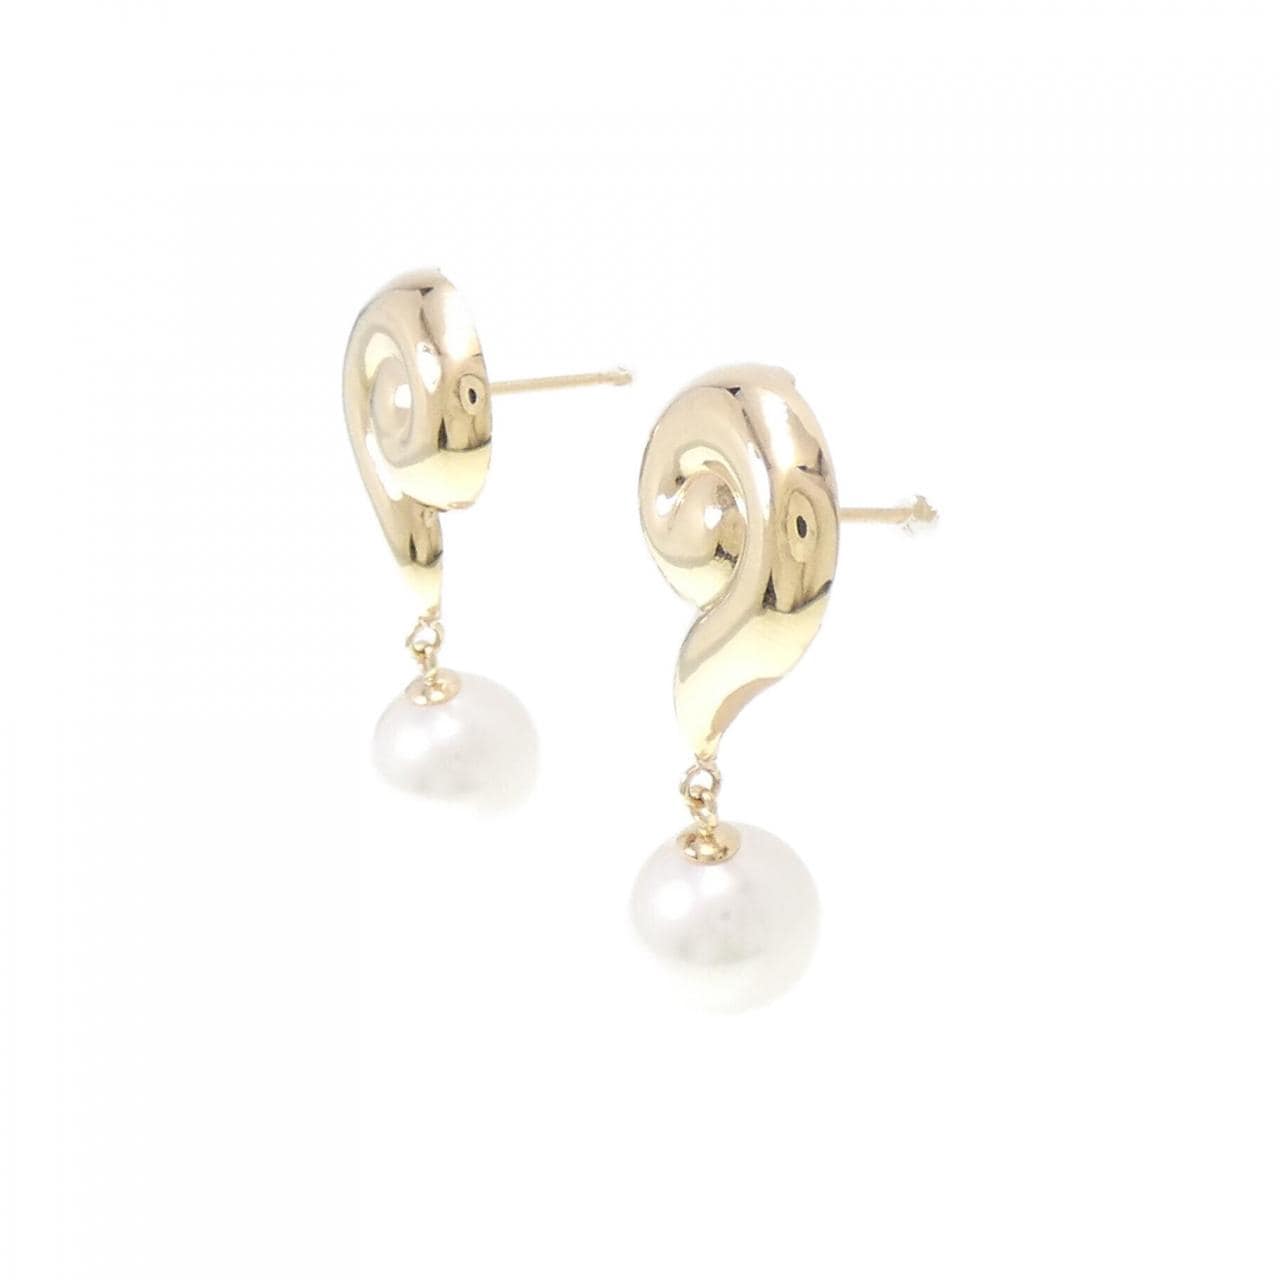 K18YG Akoya pearl earrings 7.6mm